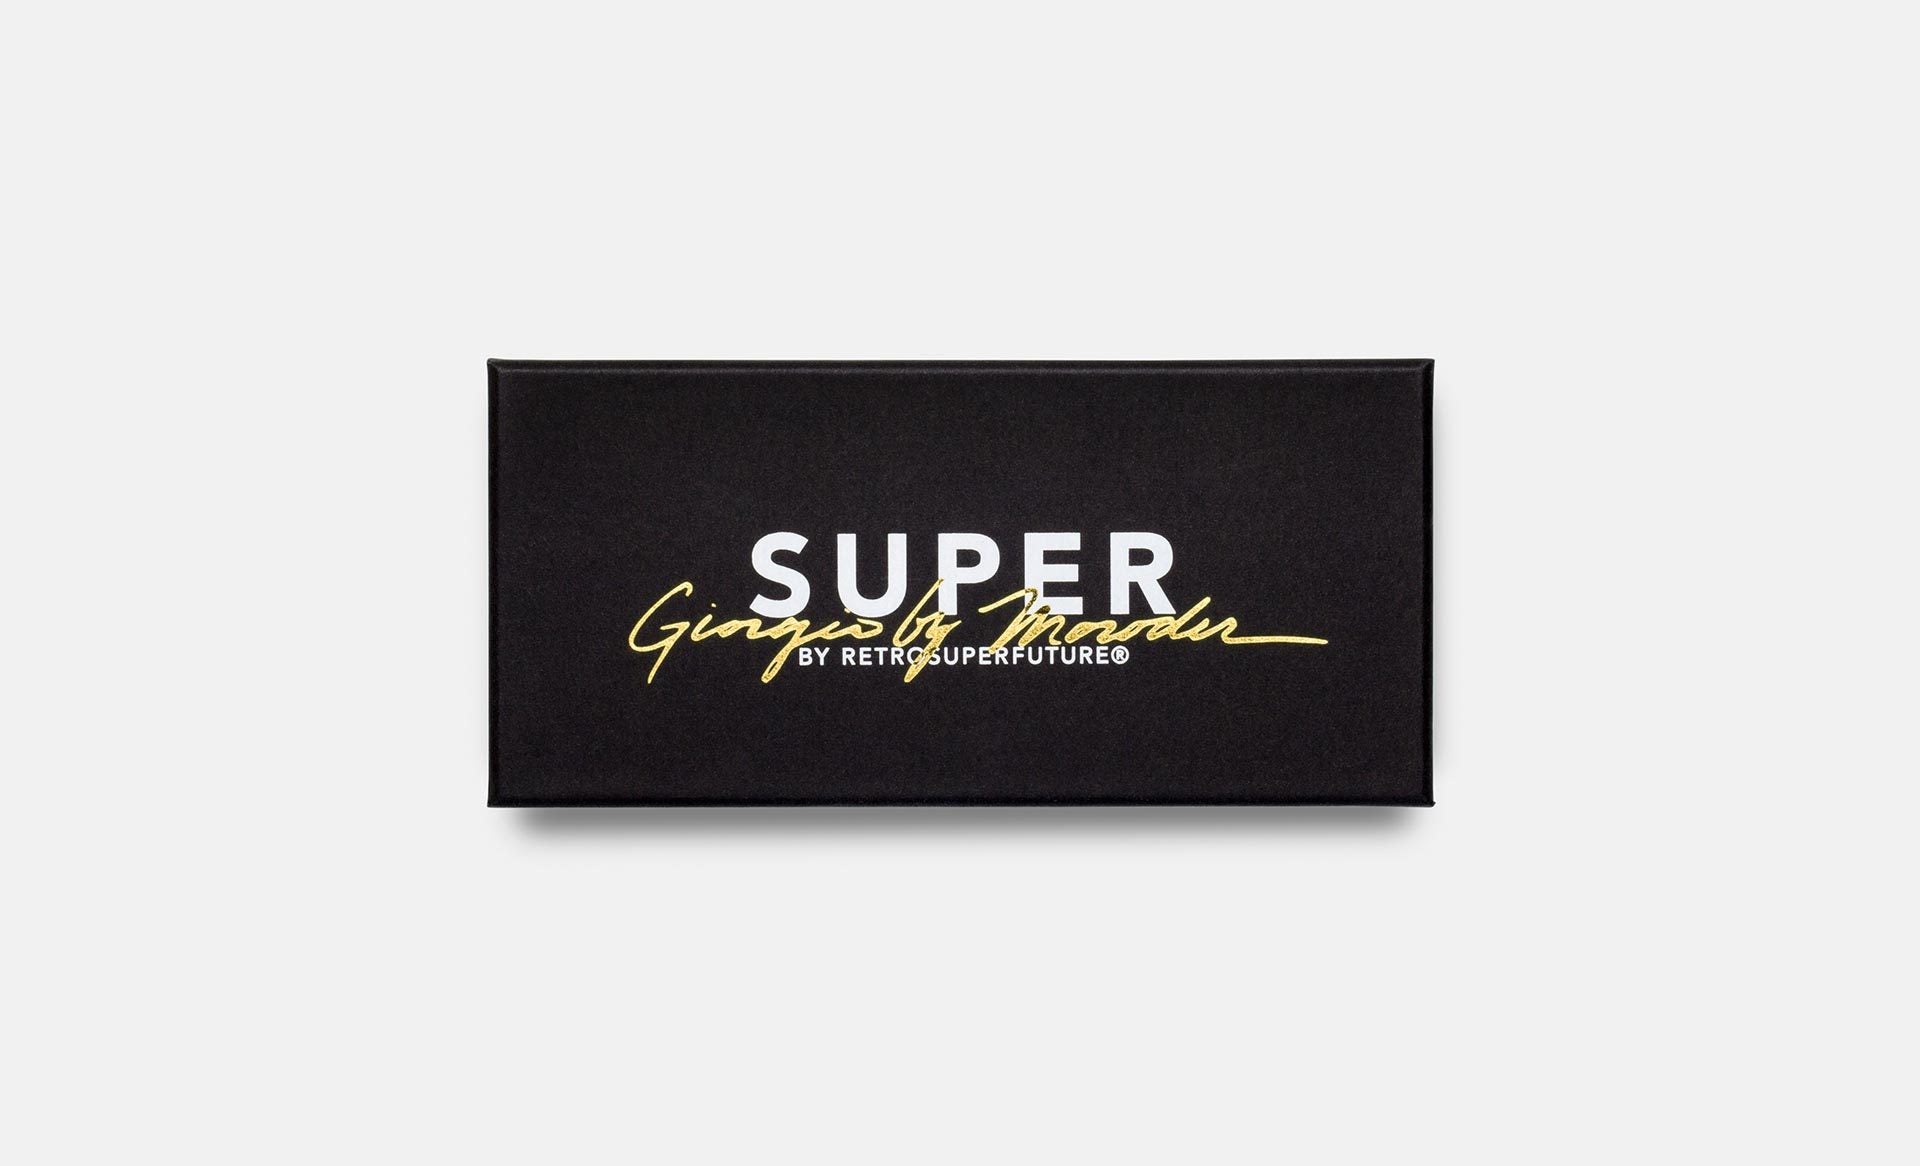 Super & Giorgio Moroder - Retrosuperfuture USA -